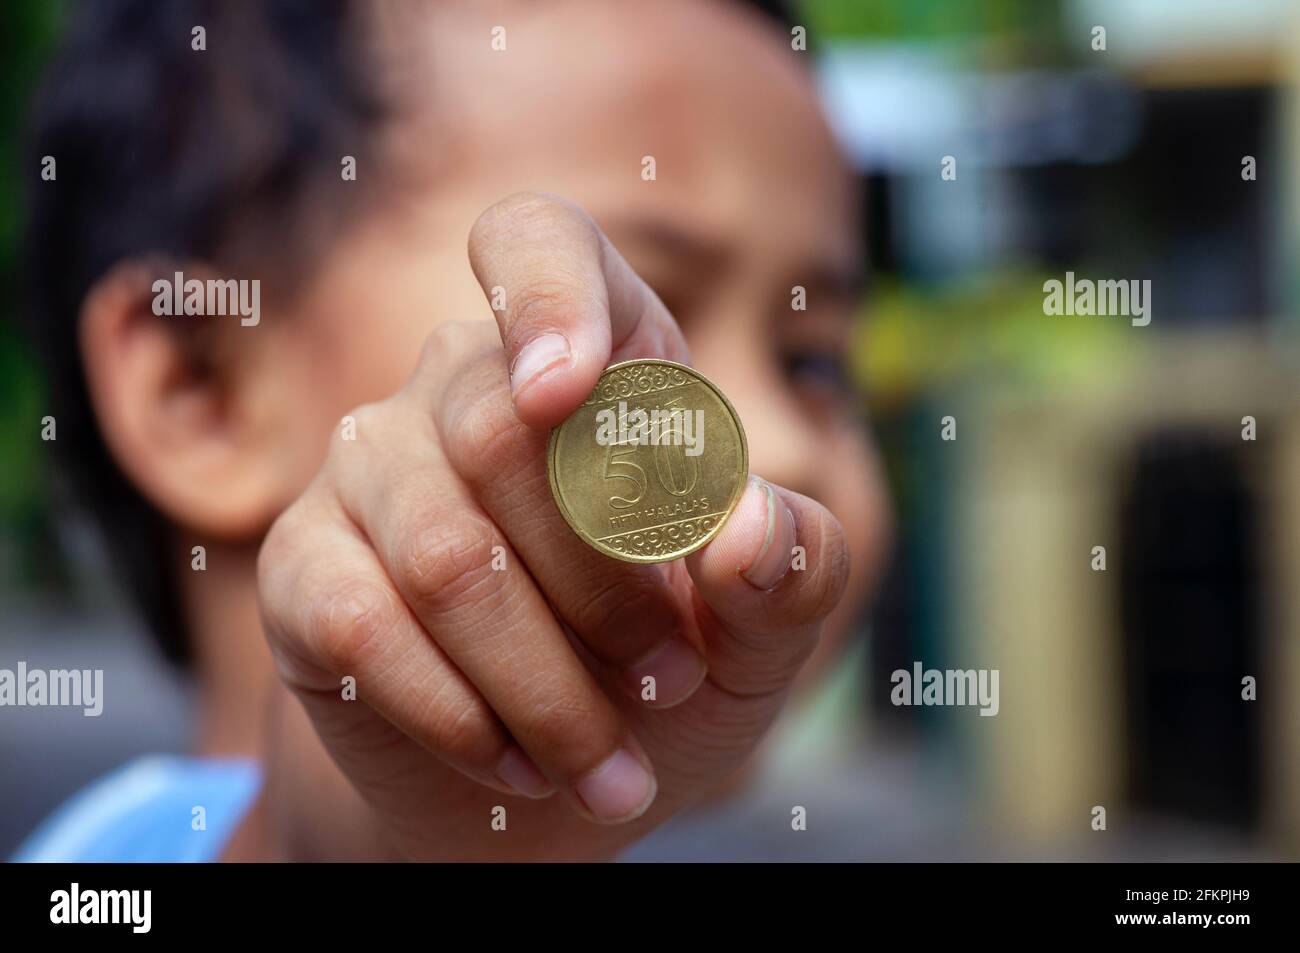 Asiatische Kinderhand mit einer Fifty Halalas Riyal-Münze, Saudi-Arabien-Geld, ausgewählter Fokus Stockfoto